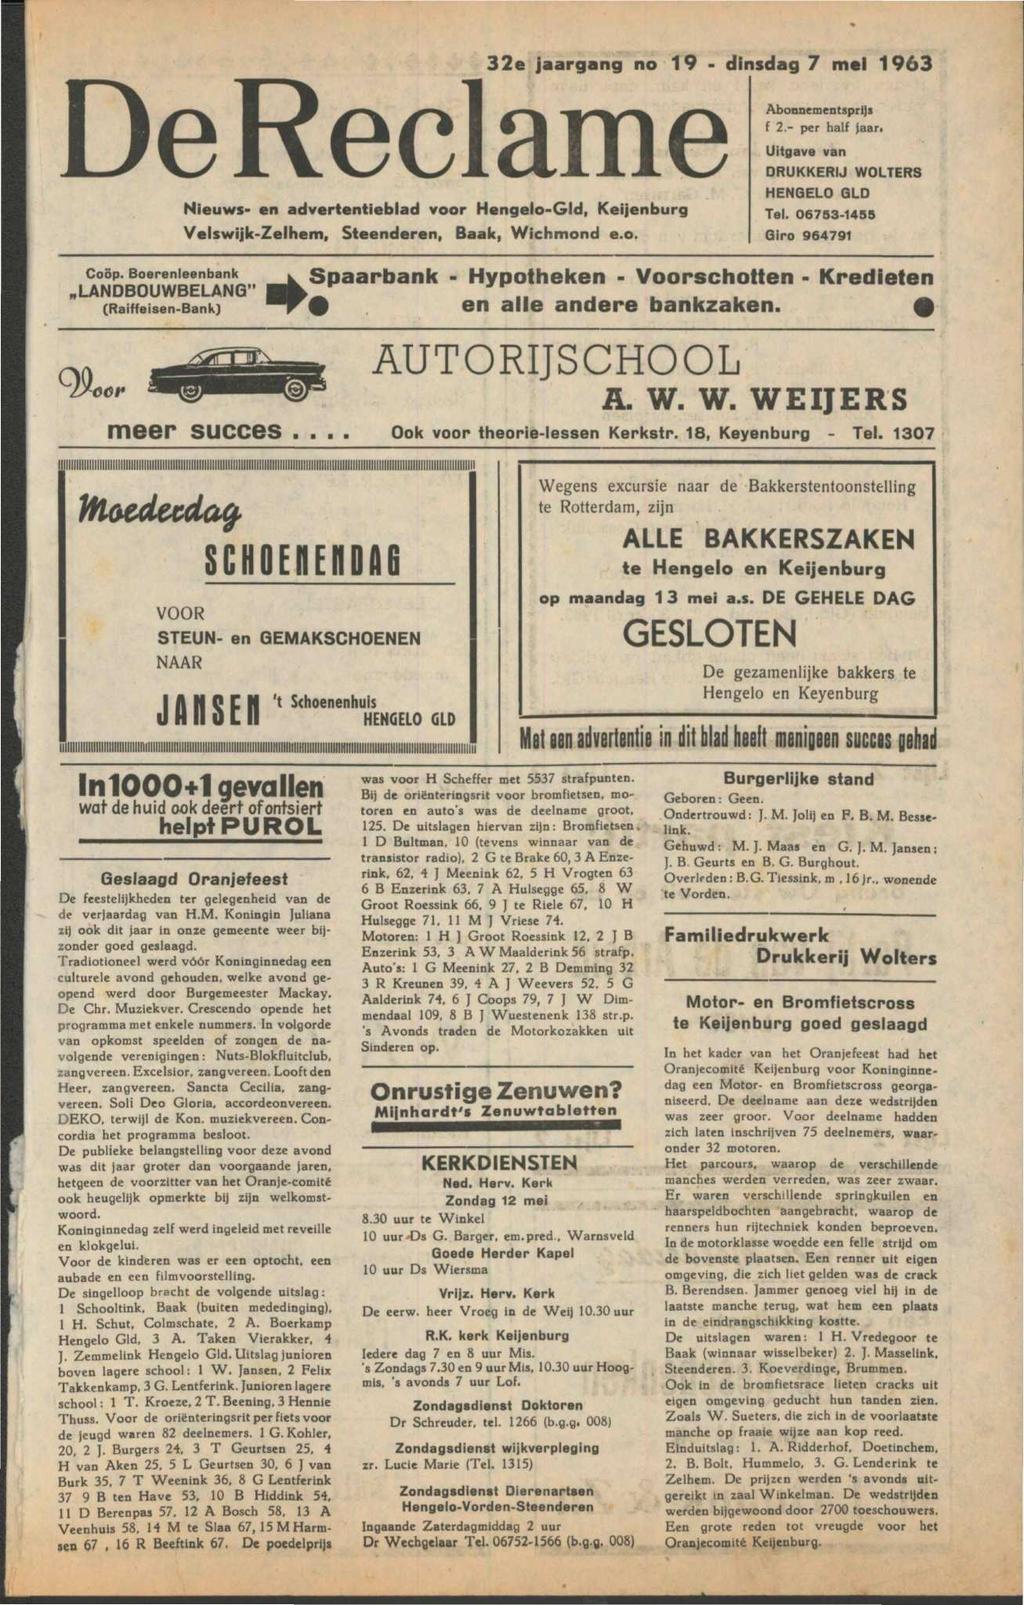 De Reclame Nieuws- en advertentieblad voor Hengelo-Gld, Keijenburg 99, COÖP.Boerenleenbank Velswijlc-Zelhem, Steenderen, Baak, Wichmond e.o. 32e jaargang no 19 - dinsdag 7 mei 1963 Abonnementsprijs f 2.